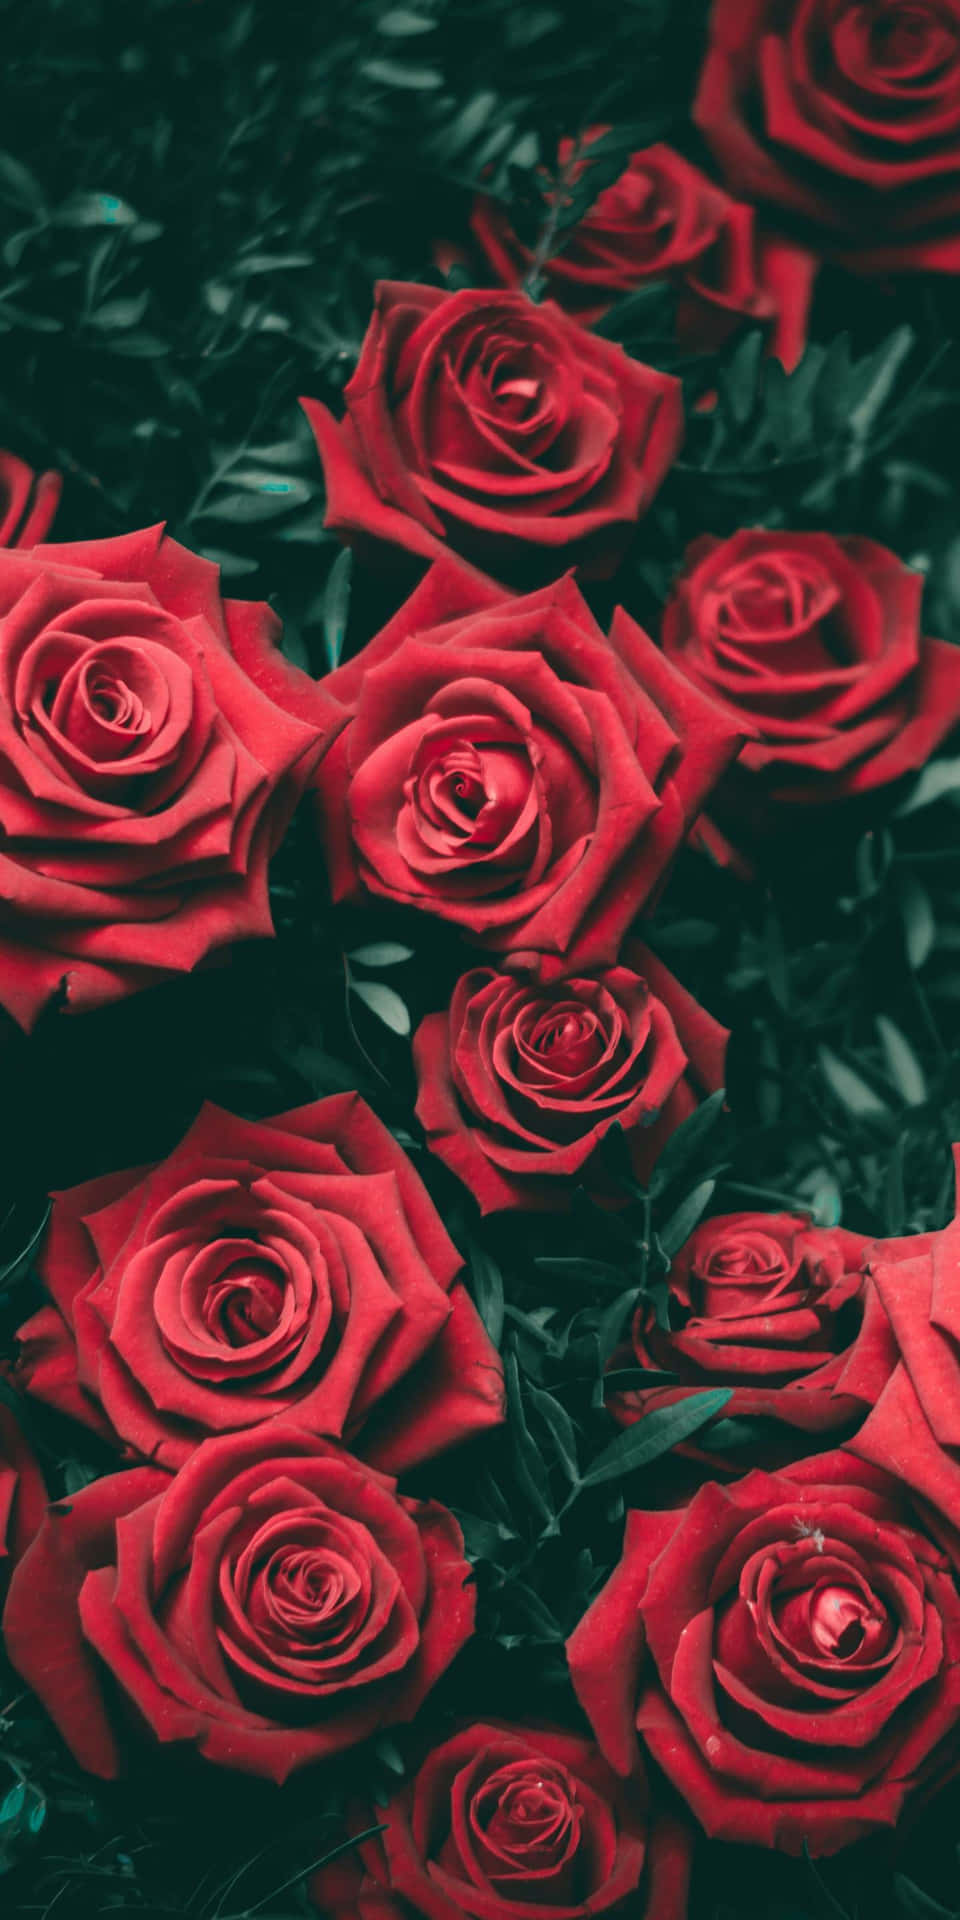 Bringensie Romantik Und Stil In Ihr Leben Mit Einem Wunderschönen Roten Rosen-ästhetik Wallpaper